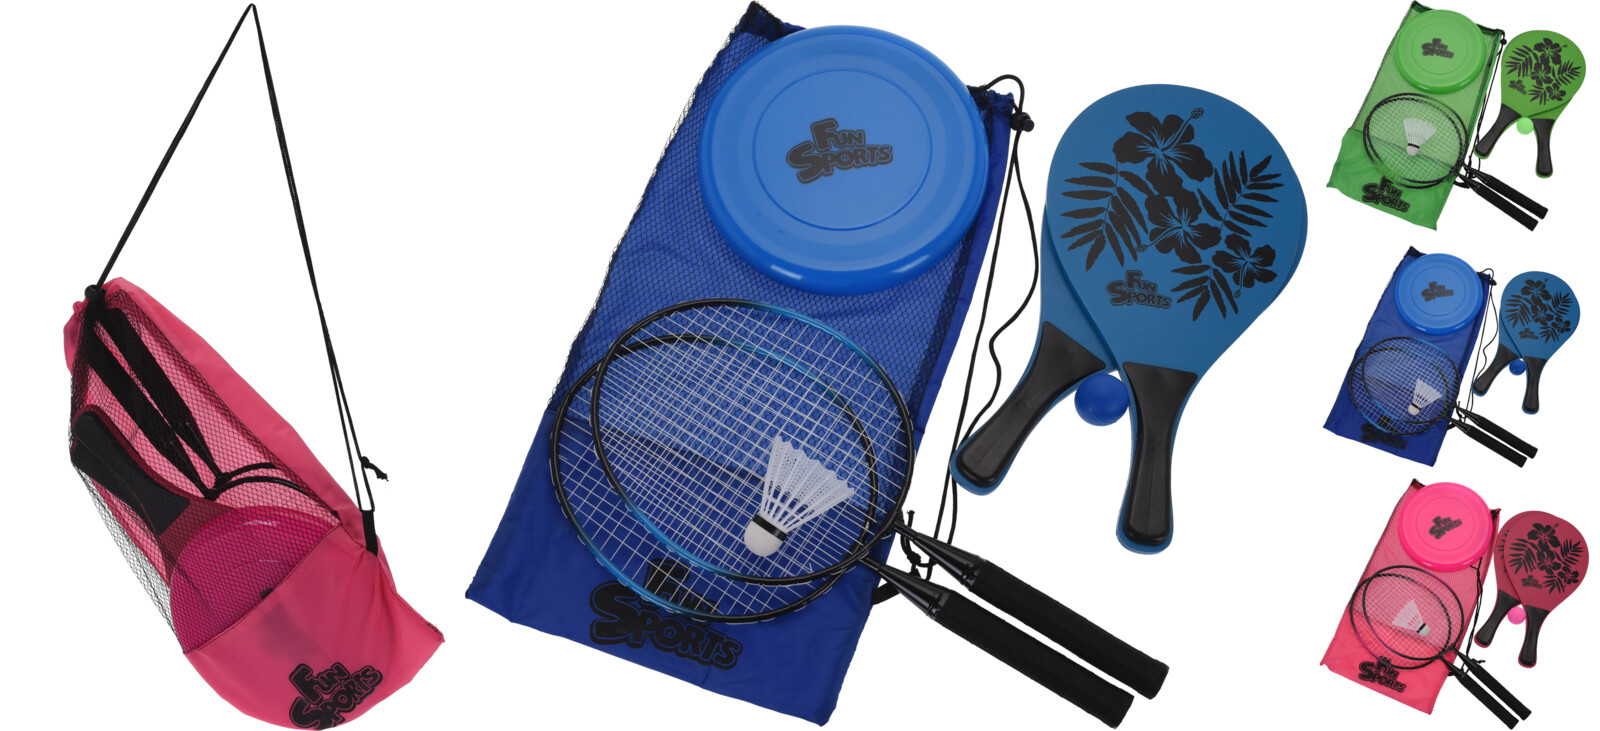 Buitenspeelset In Tas Met Beachballset, Badmintonset En Frisbee